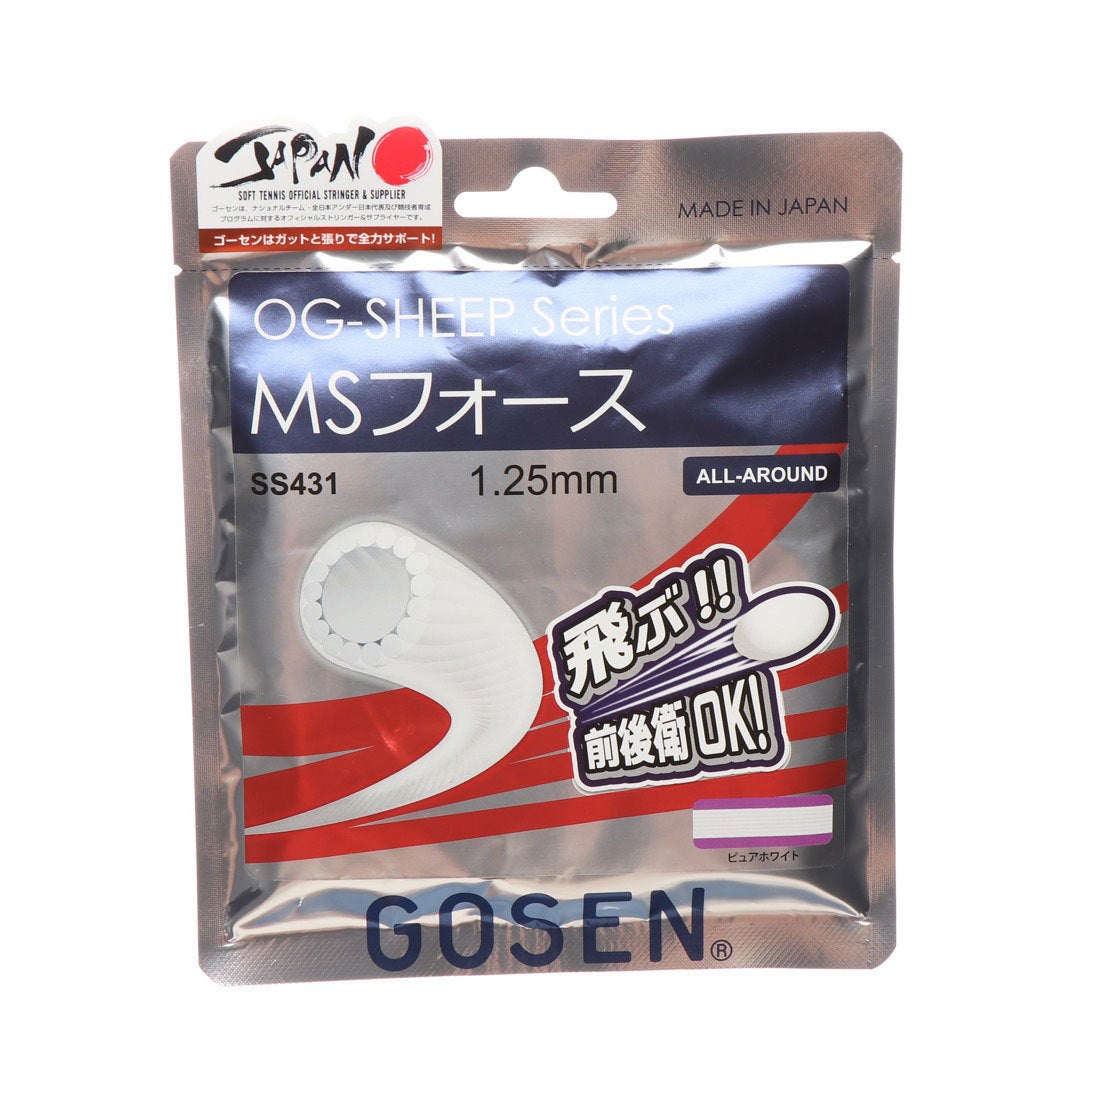 ソフトテニス ガット OG−SHEEP  MSフォース ピュアホワイト SS431PWH  かわいい GOSEN ゴーセン